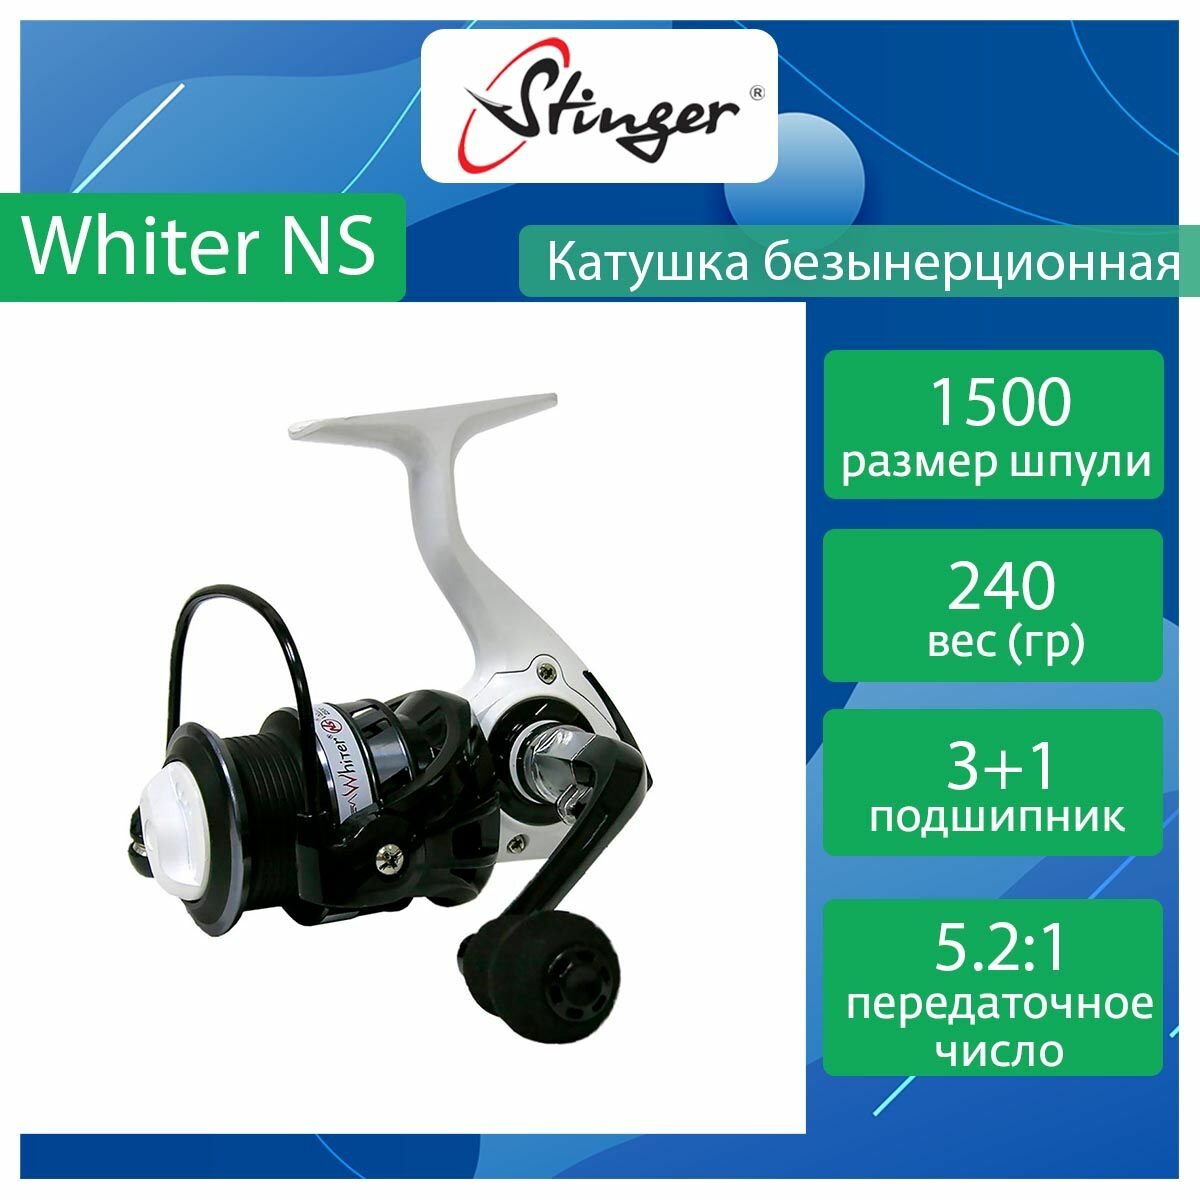 Катушка для рыбалки безынерционная Stinger Whiter NS 1500